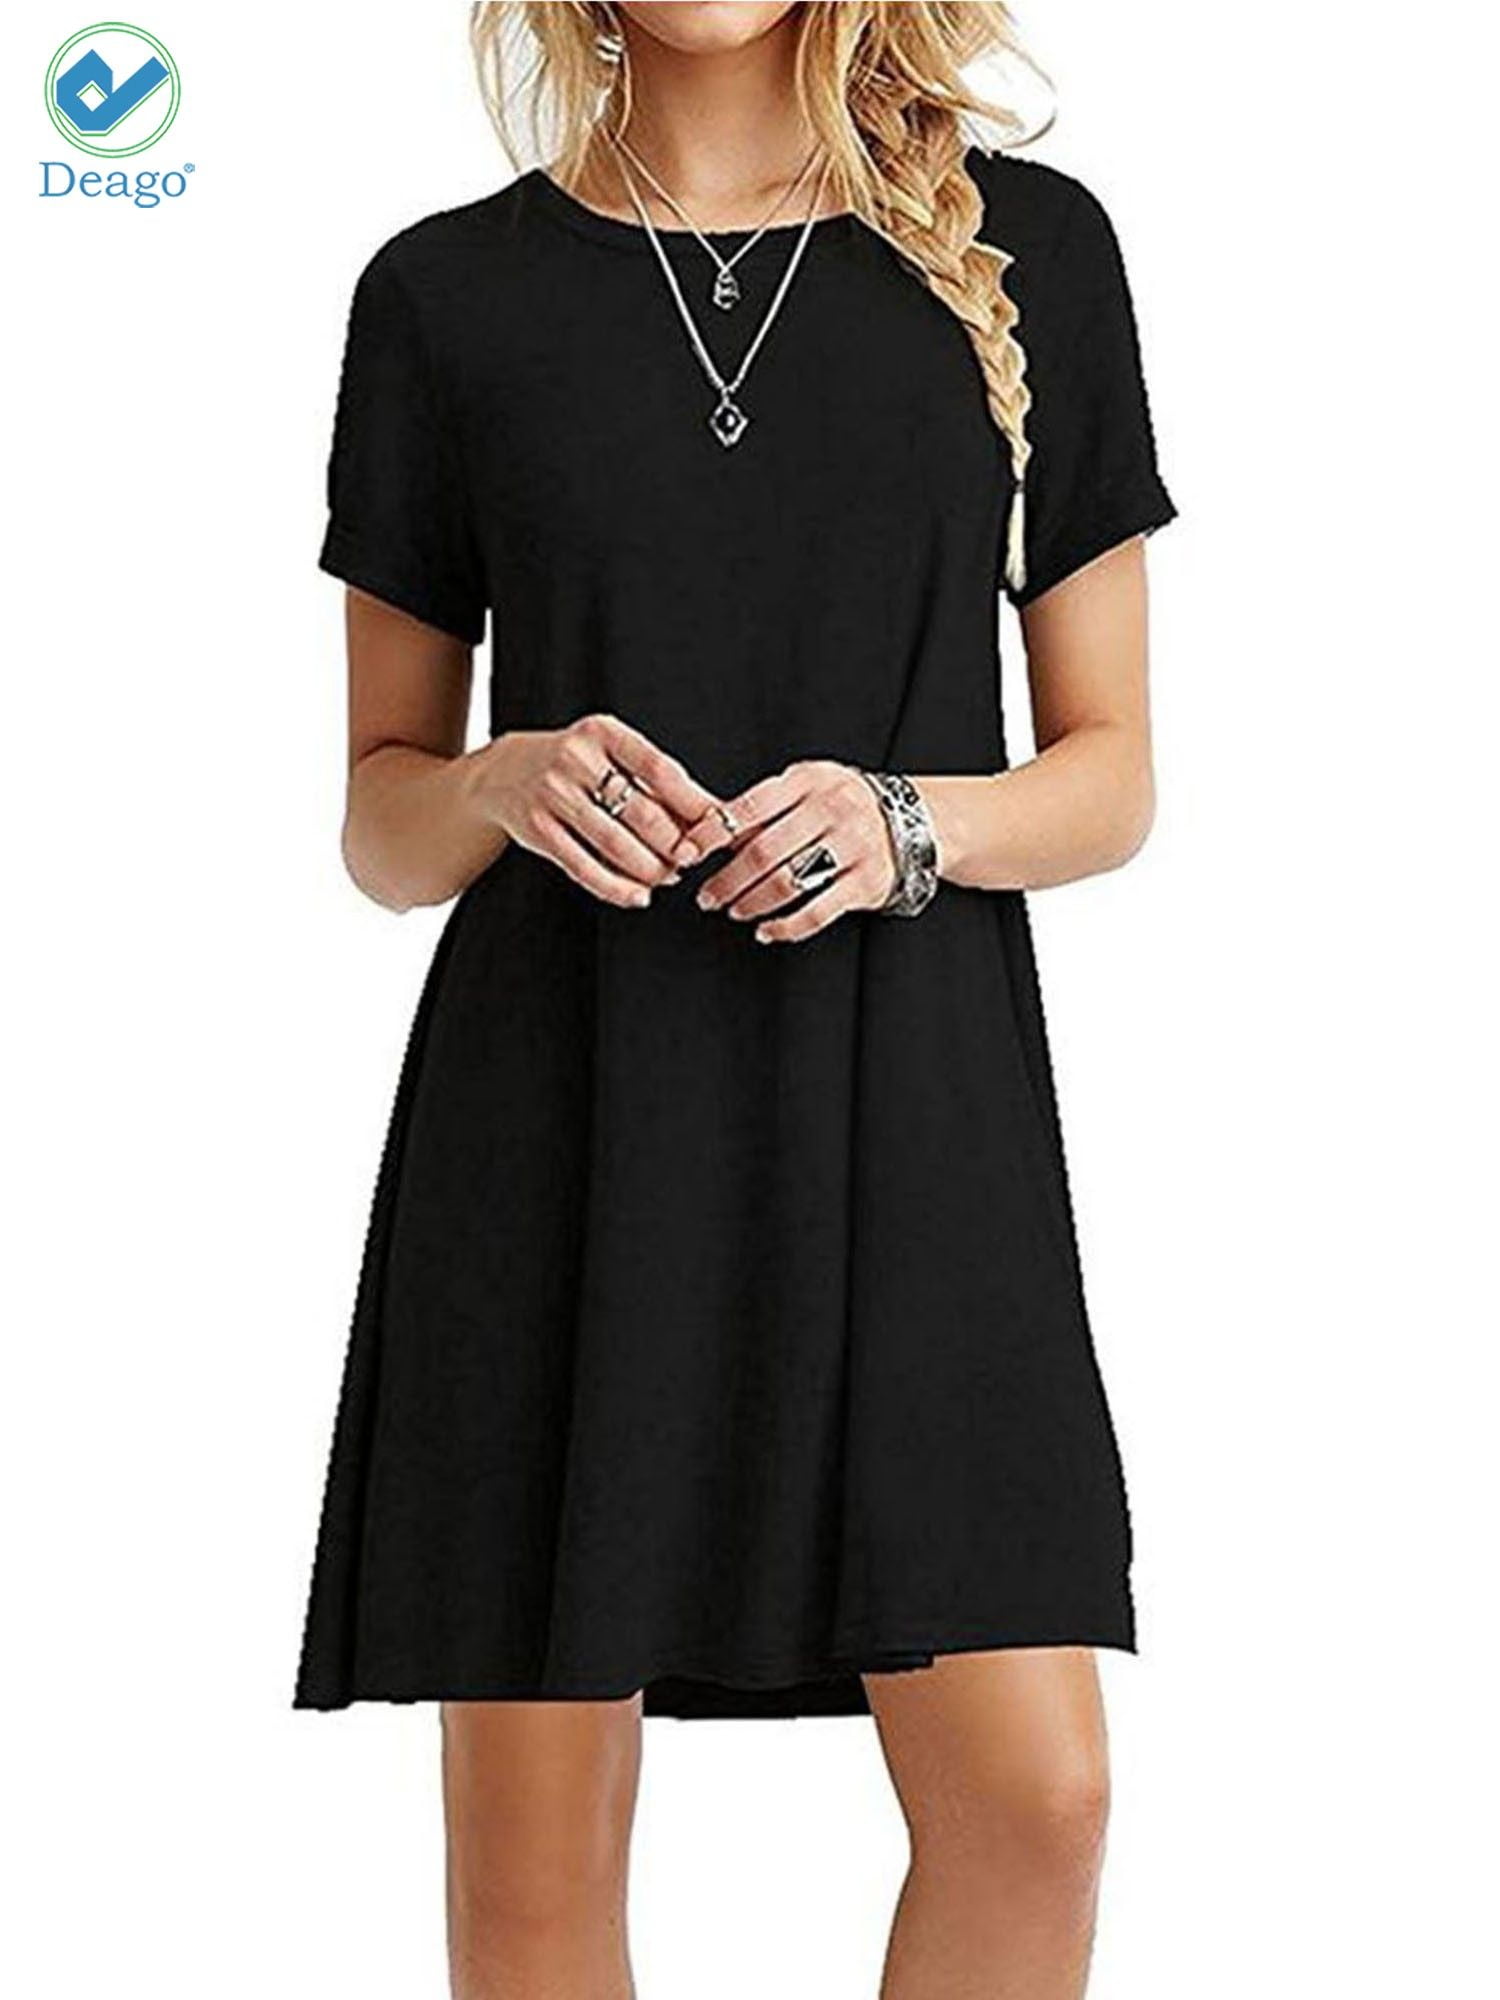 Deago Women's Sundress Short Sleeve Casual T-shirt Dress Plain A Line Loose  Summer Dress Plus Size (Black, XXL) - Walmart.com